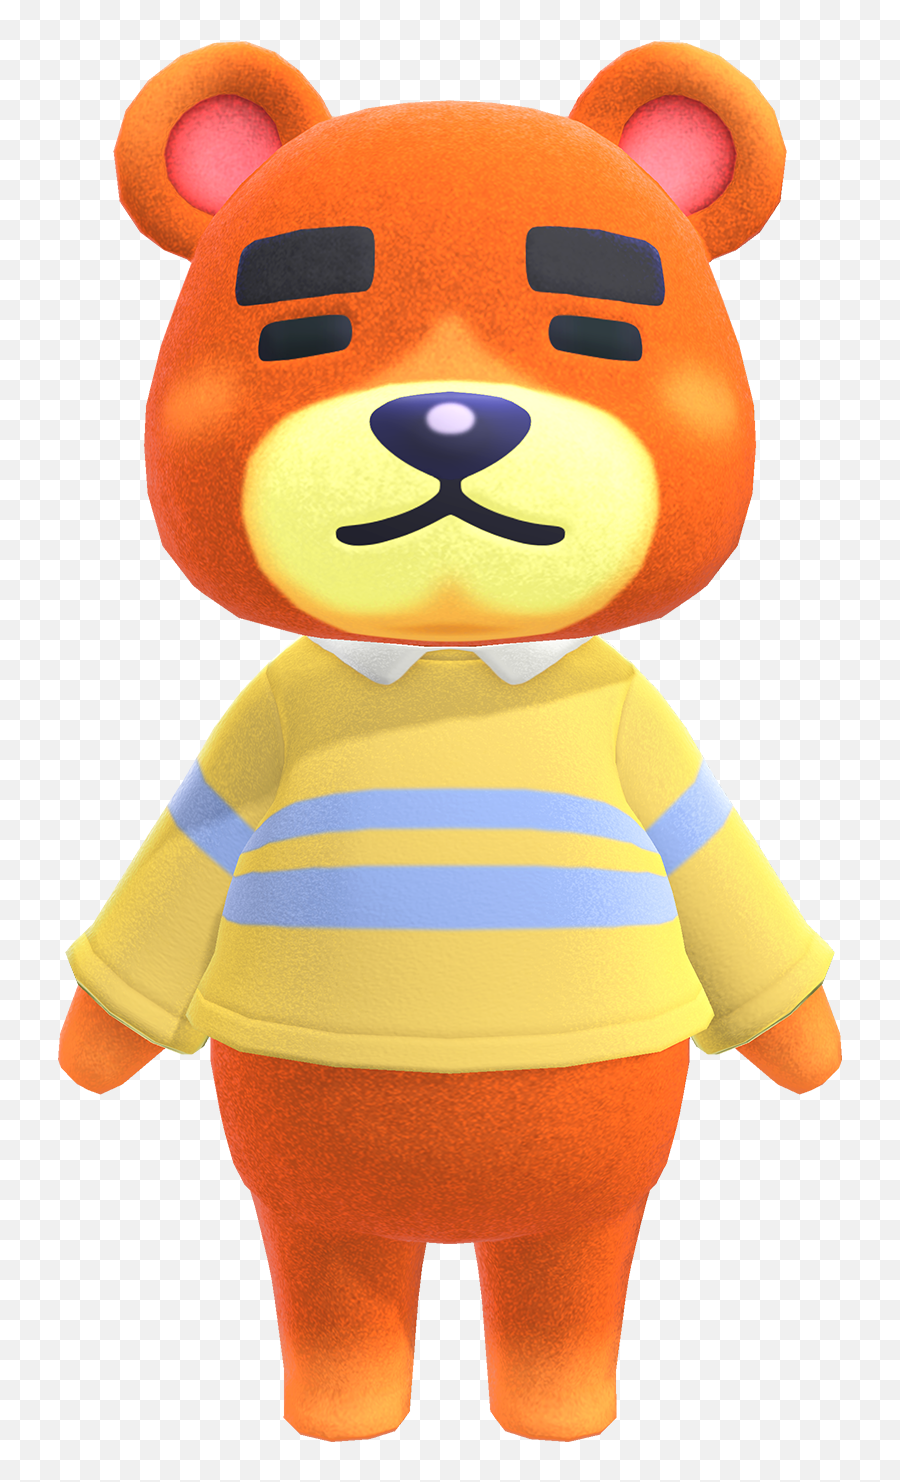 Teddy - Teddy Animal Crossing Emoji,Cute Bear Emotions